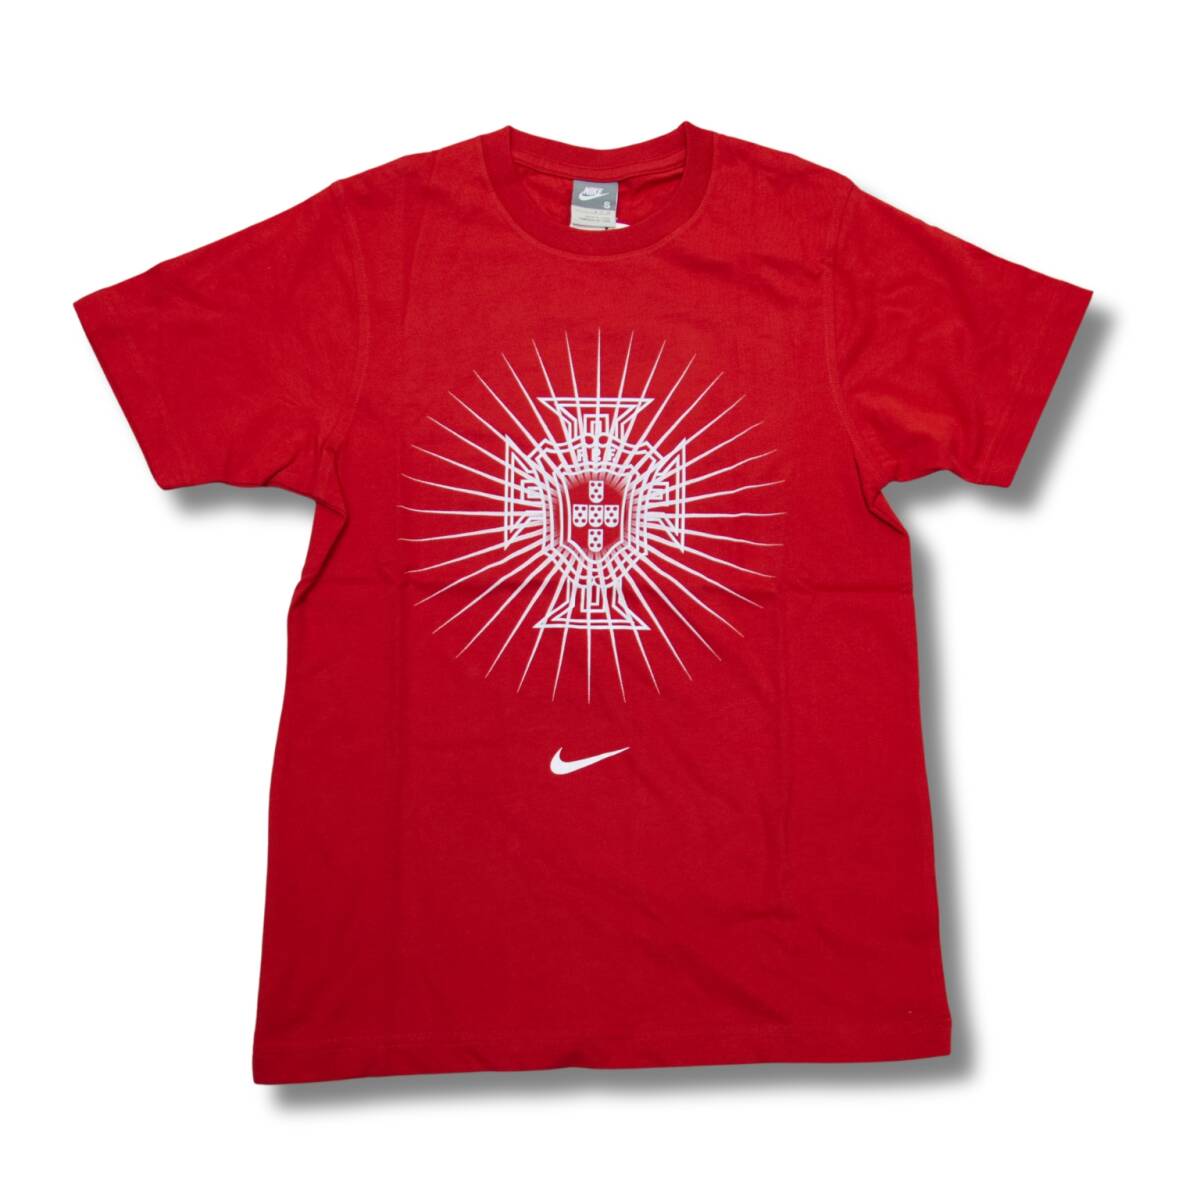 即決☆ナイキ ポルトガル代表Tシャツ US Lサイズ 日本サイズ XL 送料無料 半袖 ナイキジャパン国内正規品 NIKE_画像1